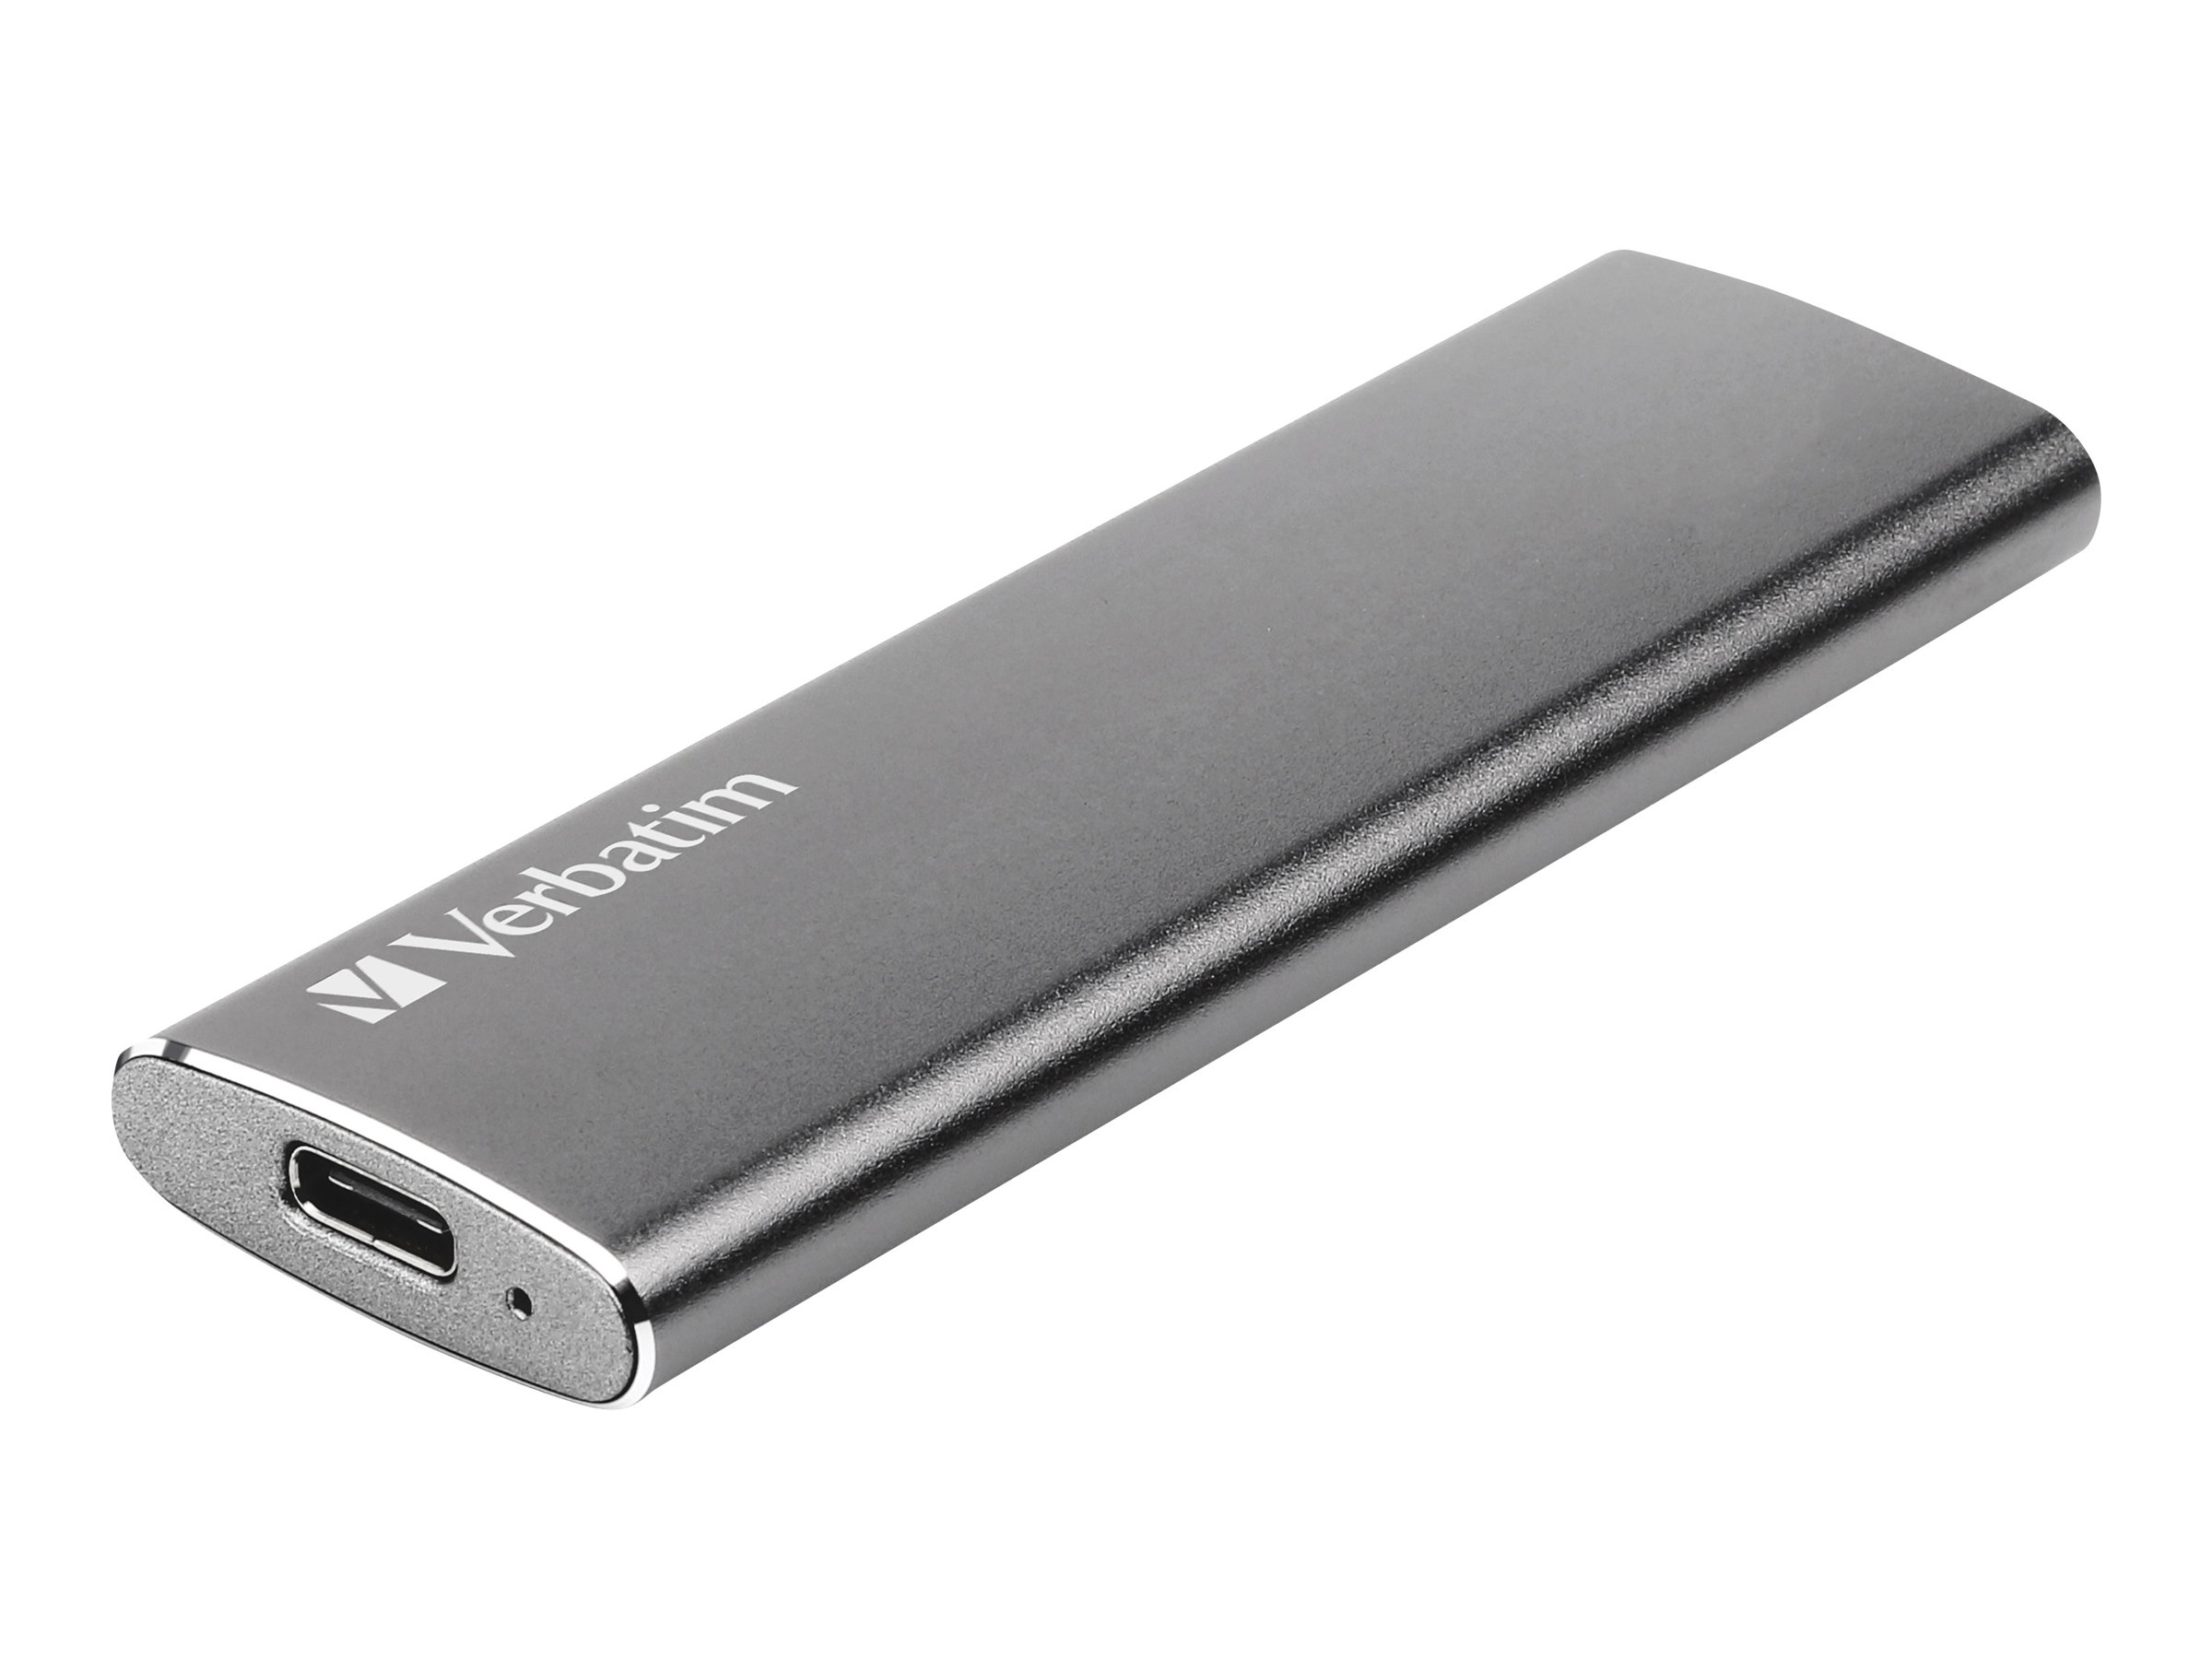 Verbatim Vx500 - 120 GB SSD - extern (tragbar) - USB 3.1 Gen 2 (USB-C Steckverbinder)